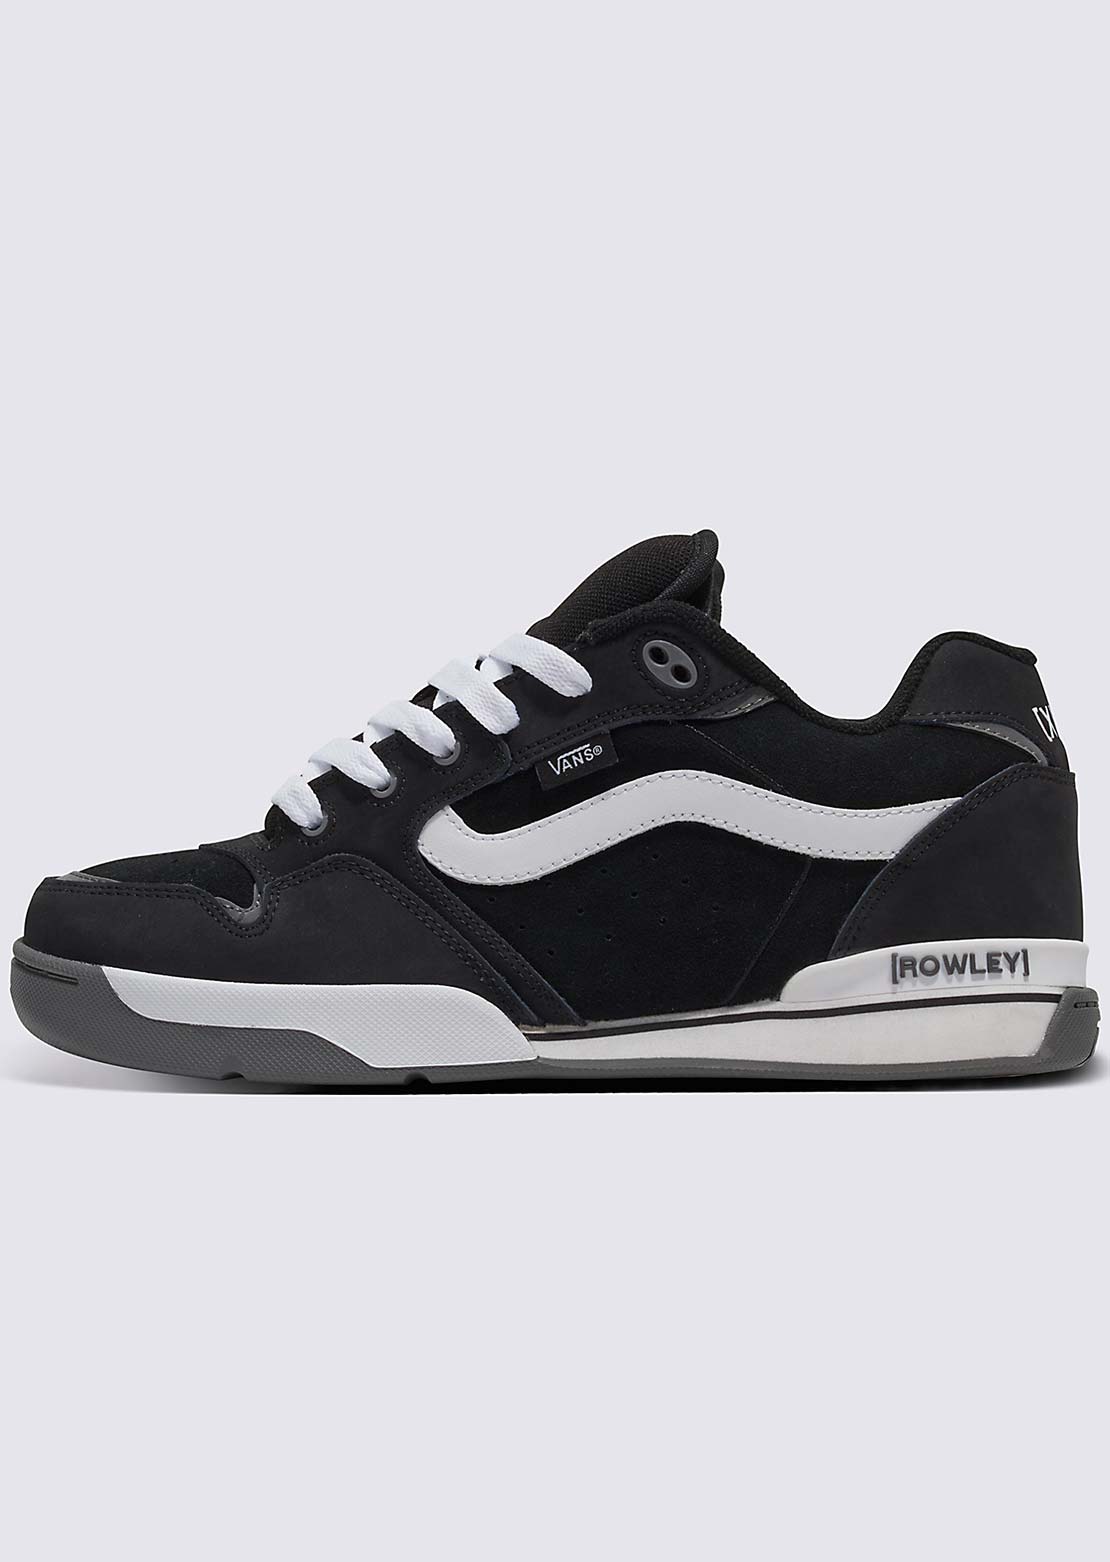 Vans Unisex Rowley XLT Shoes Black/White